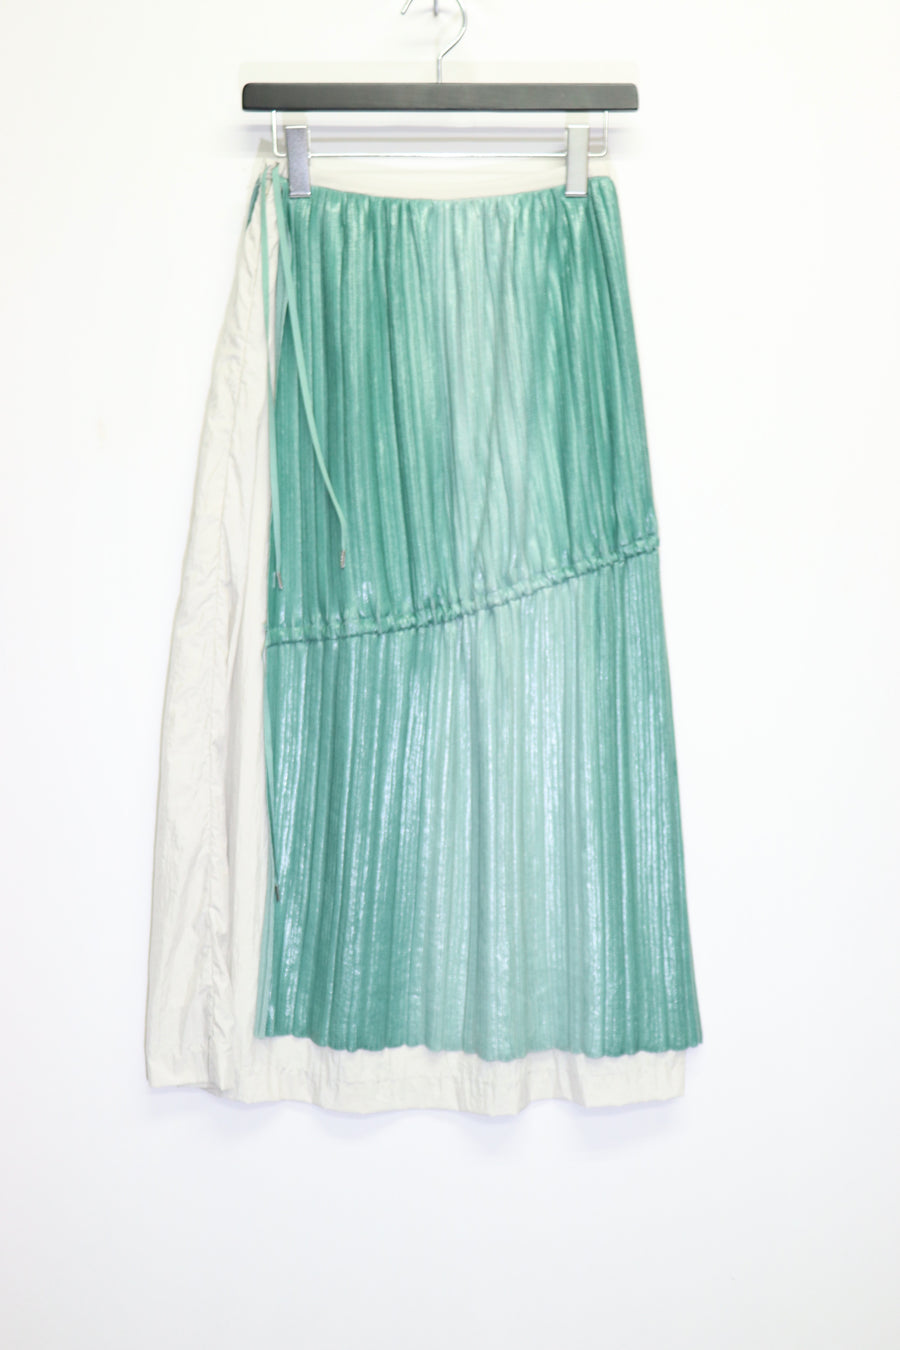 tiit tokyo  gradation knit skirt